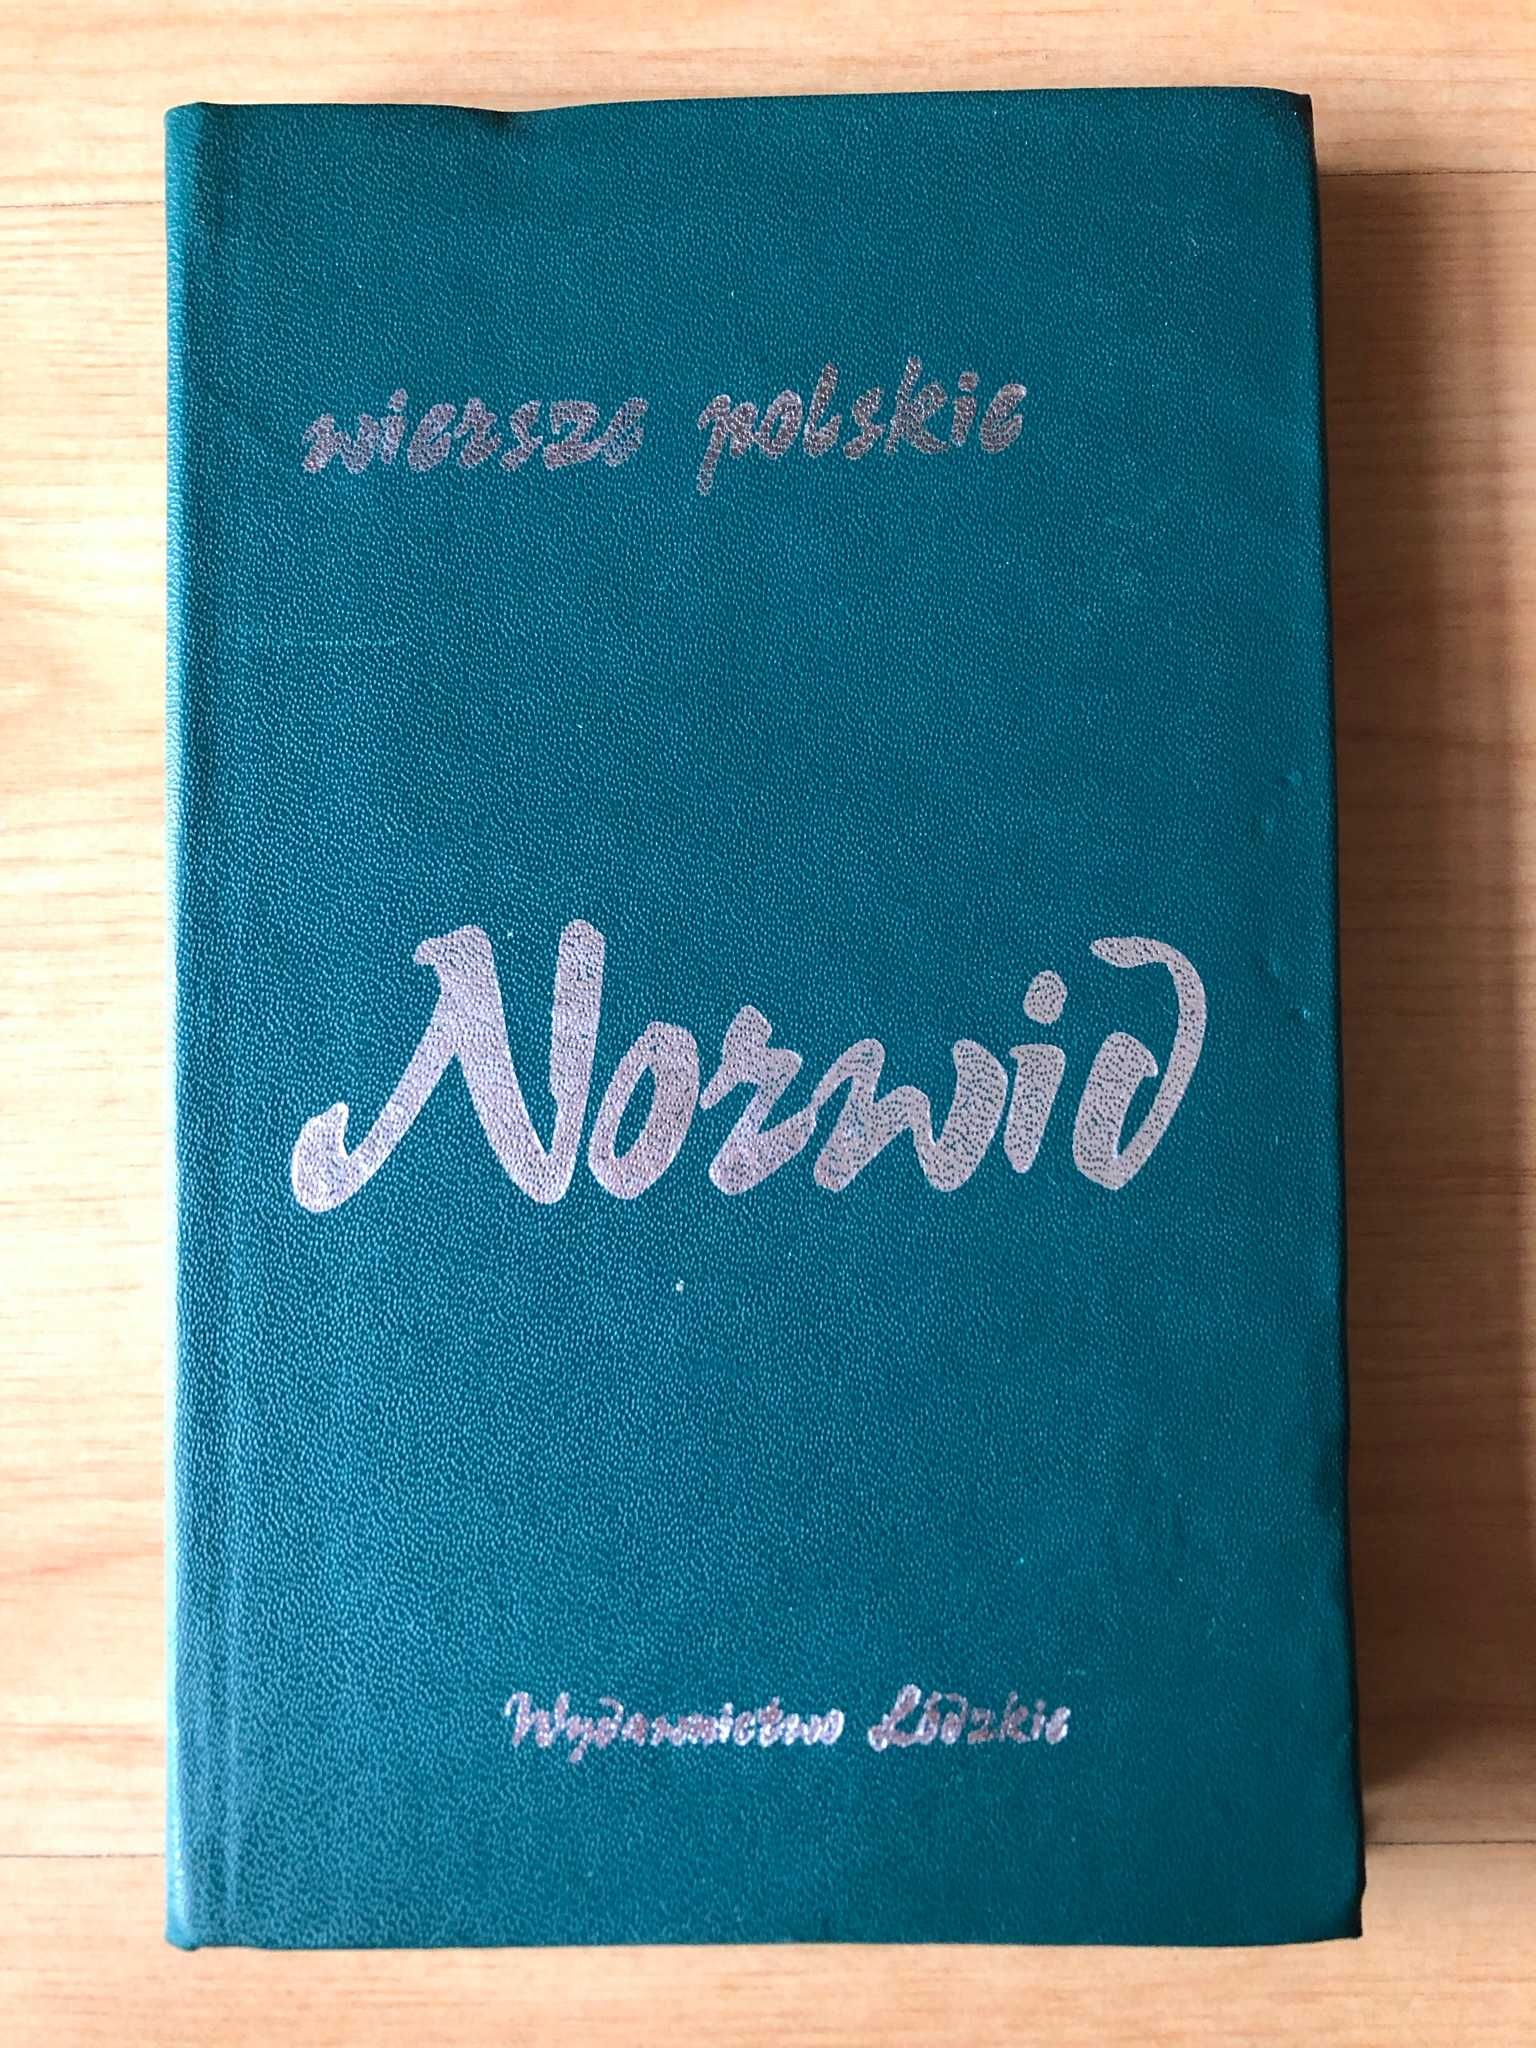 Wiersze polskie (1988) - Cyprian Kamil Norwid